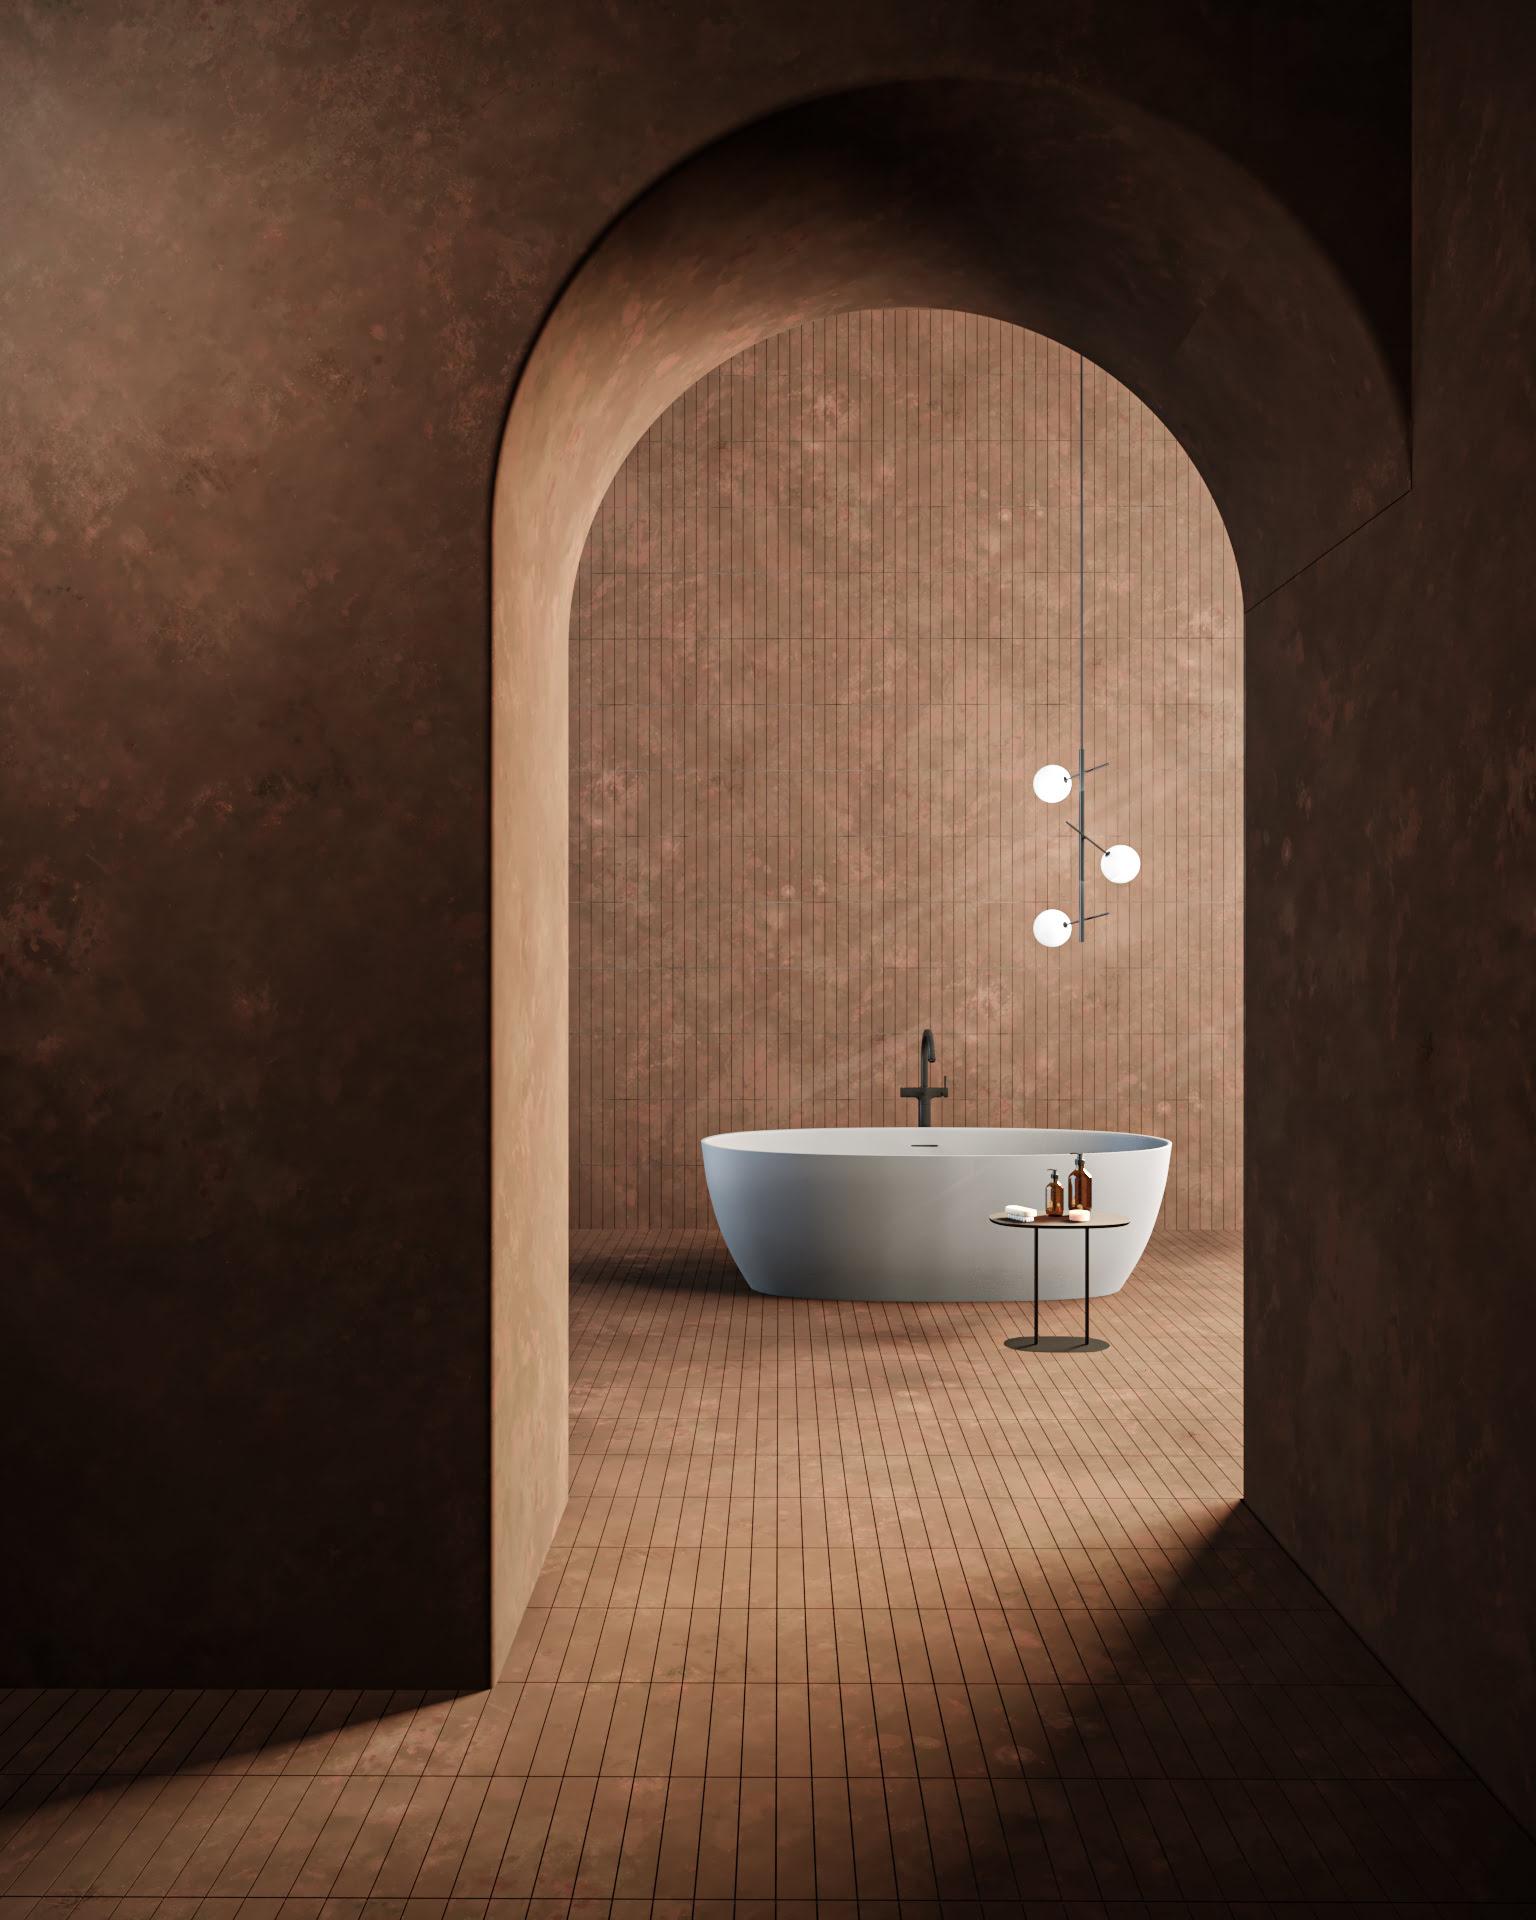 Produktvisualisierung einer Badewanne in stilvoller Umgebung